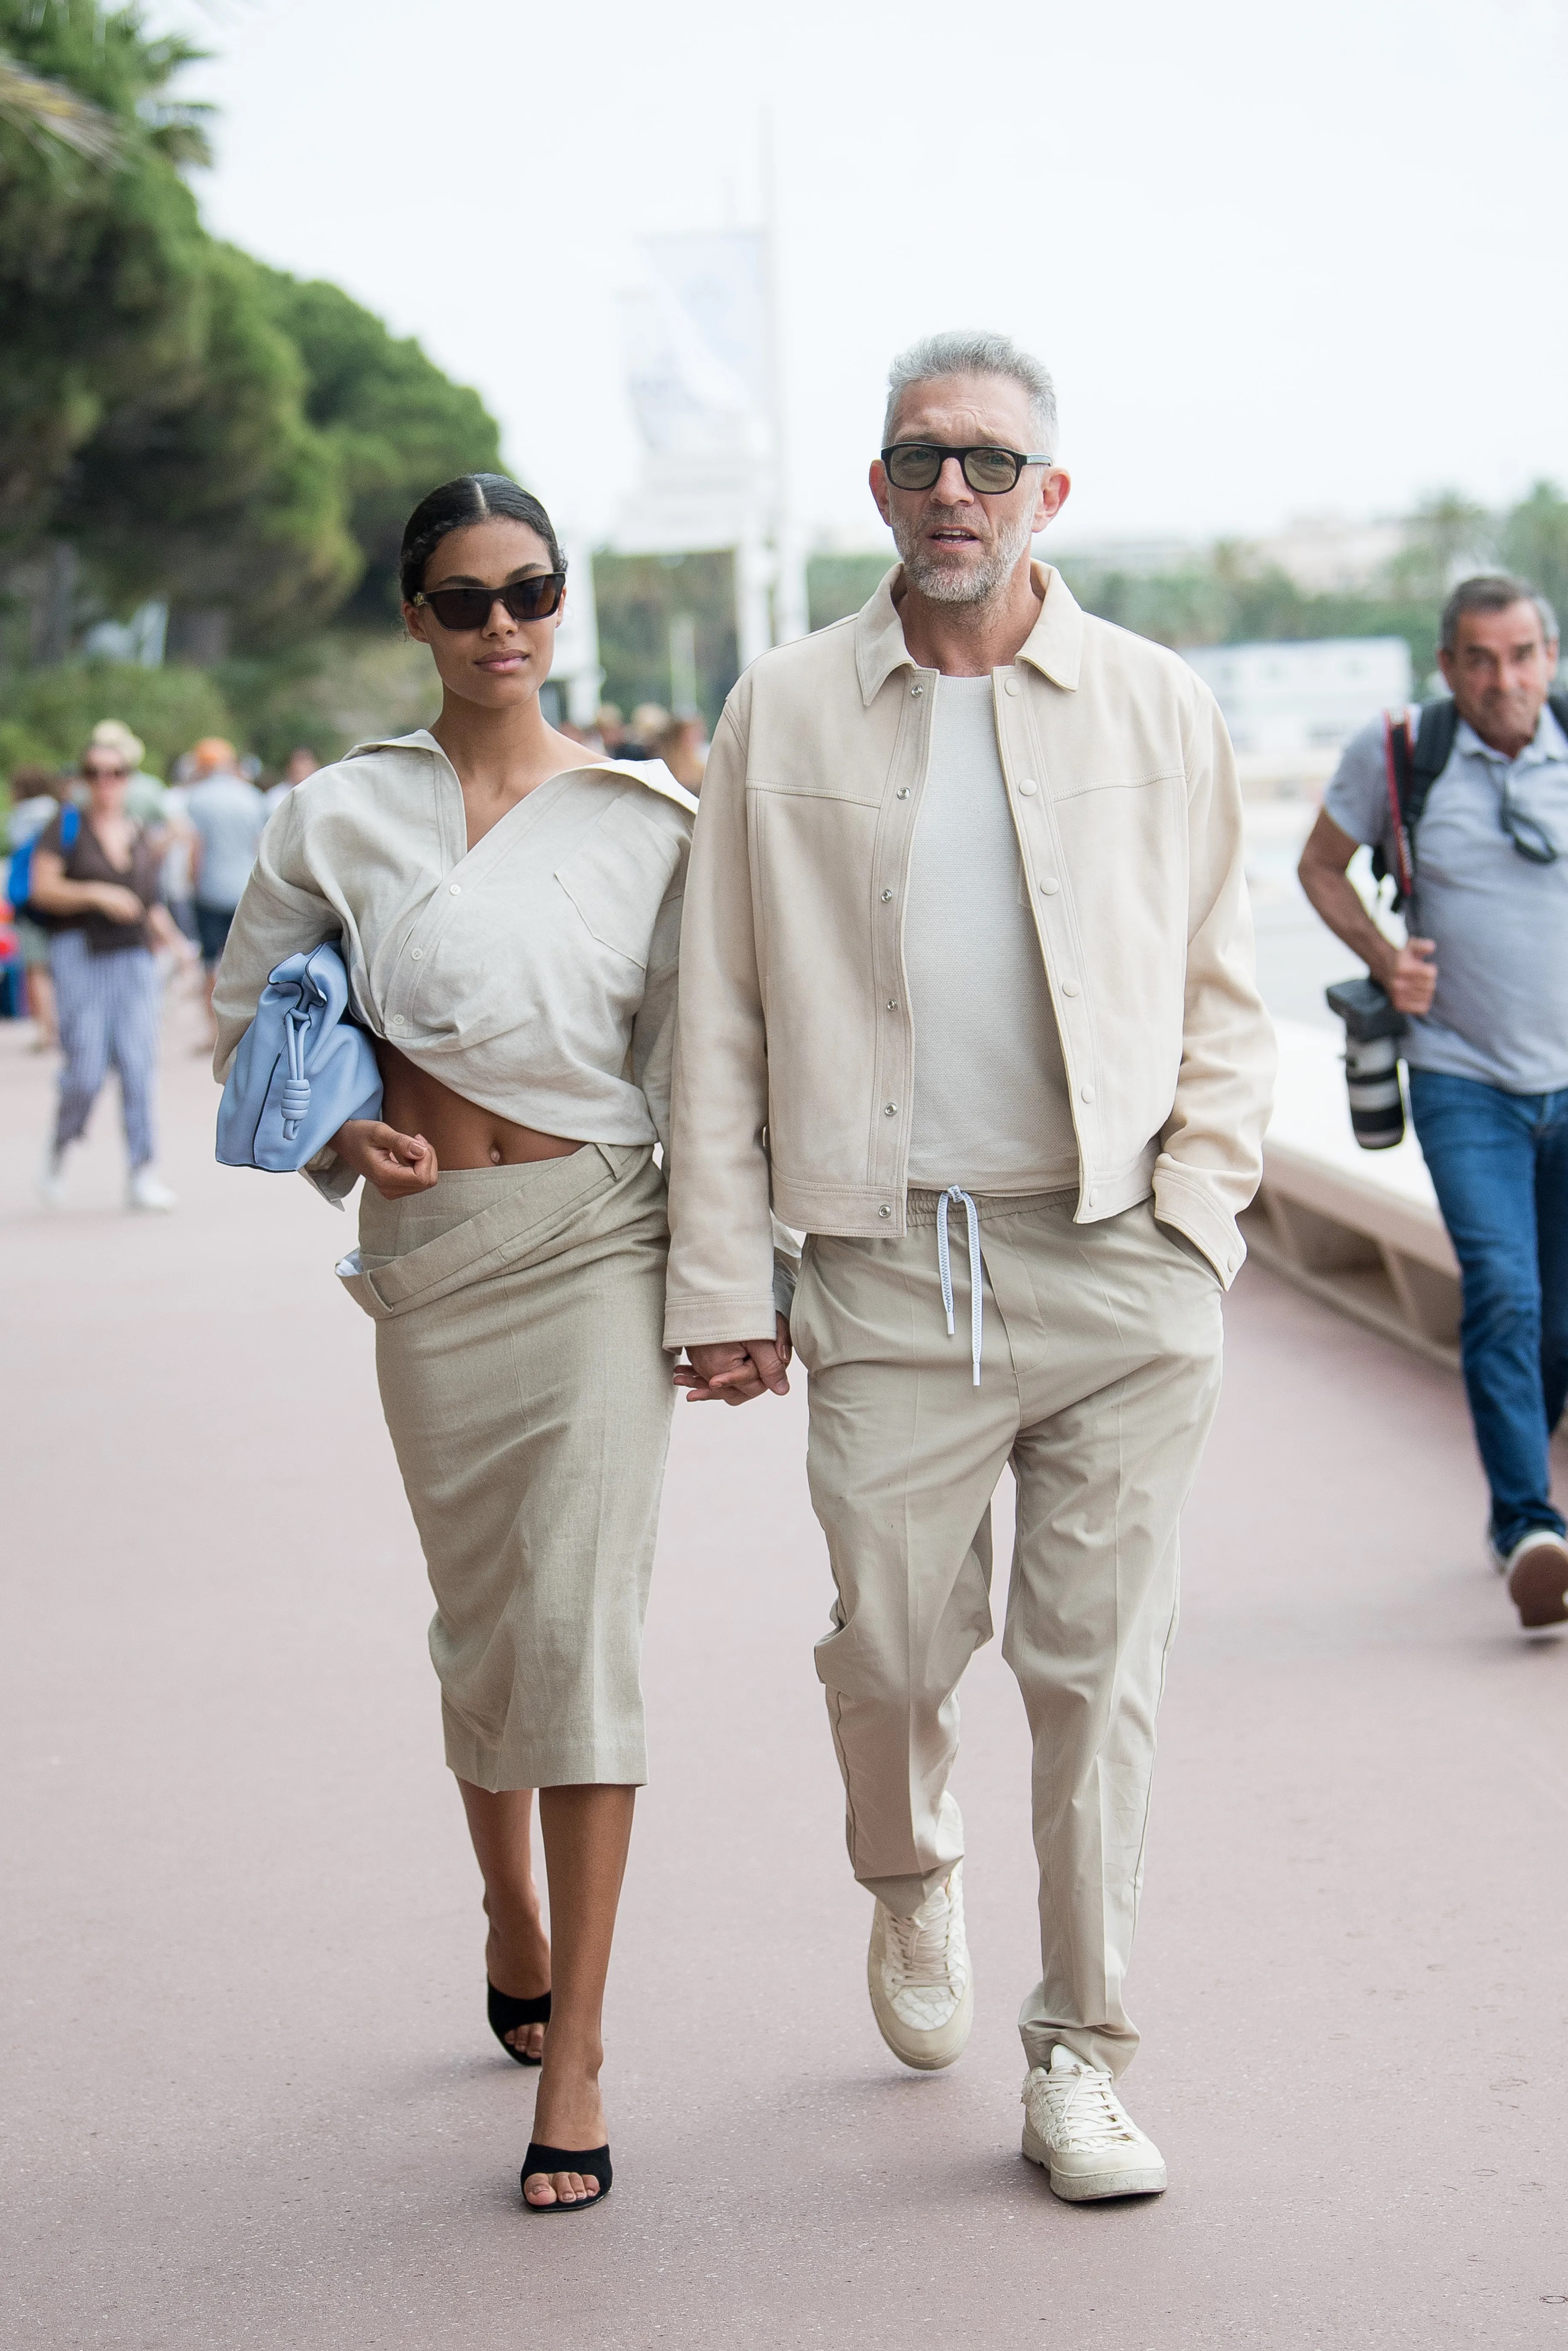 Стиль в одежде для мужчины 40 лет: как одеваться модно